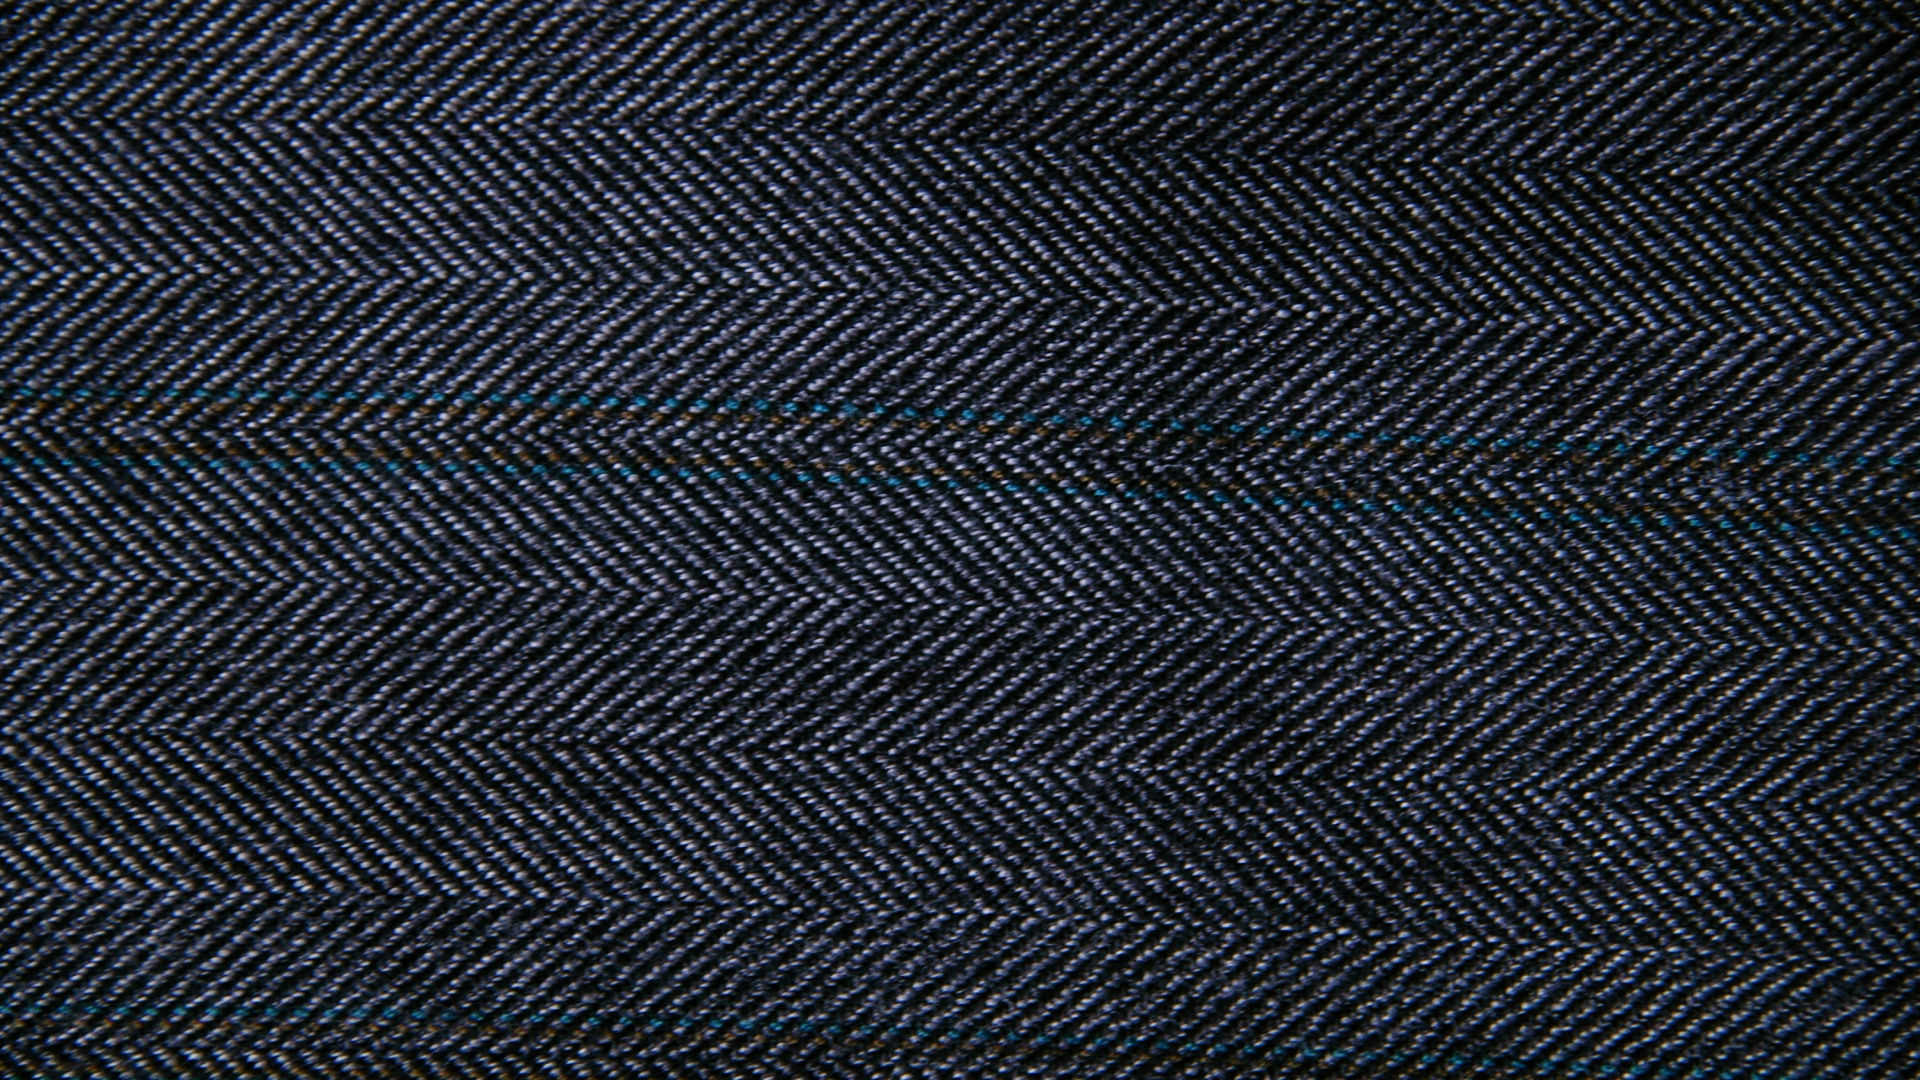 Textil Rayado Blanco y Negro. Wallpaper in 1920x1080 Resolution